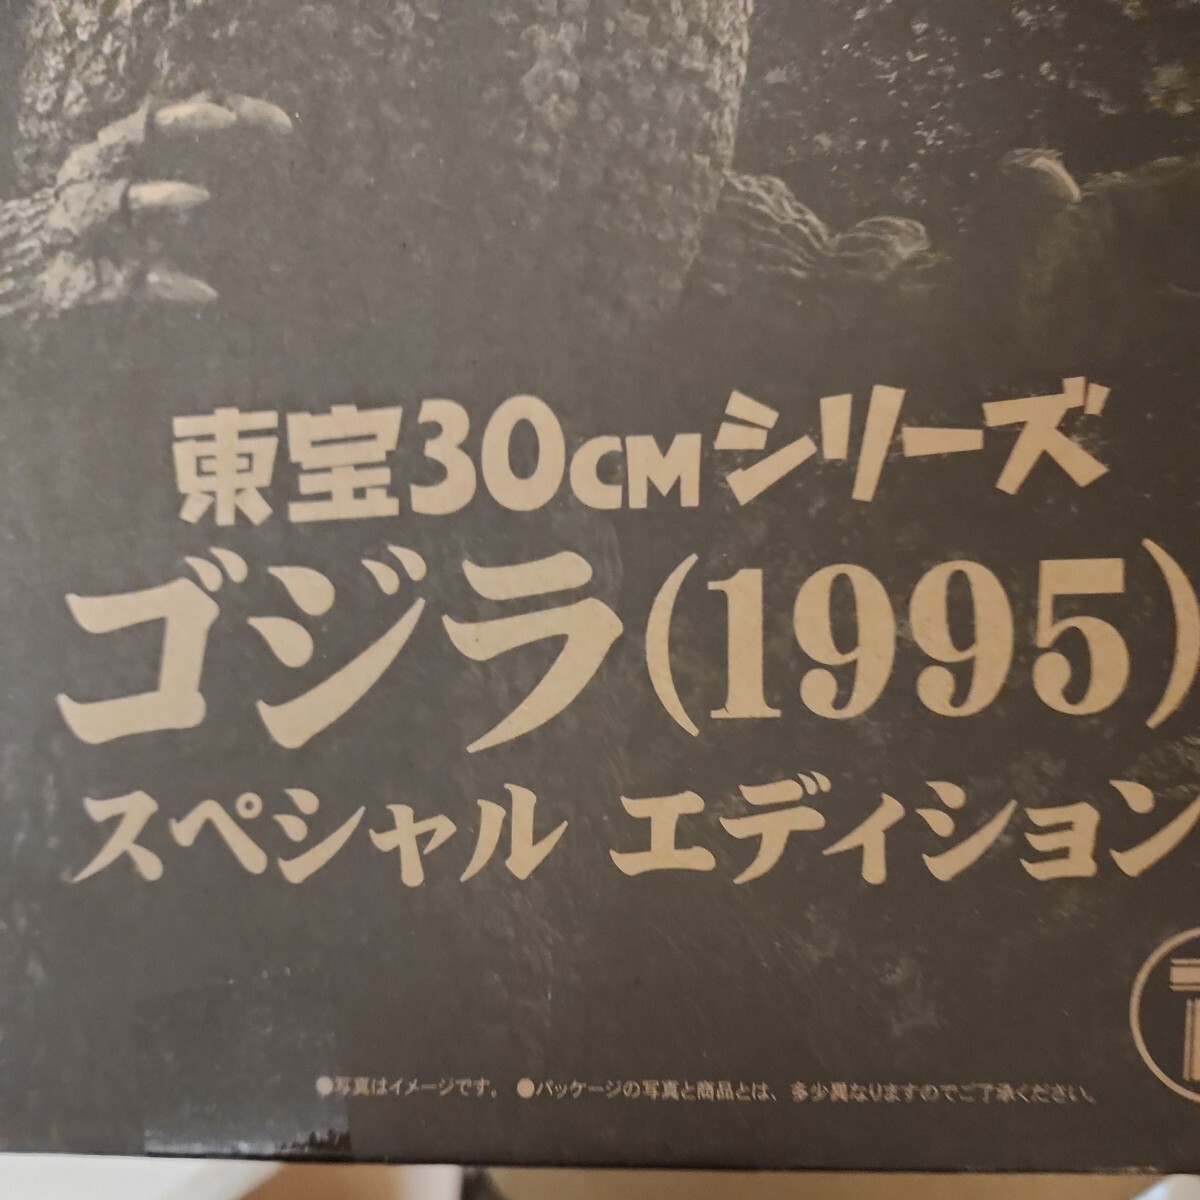 希少日本国内正規品少年リック限定版東宝30cmシリーズゴジラ1995スペシャルエディション開封未使用品輸送箱付絶版入手困難レアバーニングの画像2